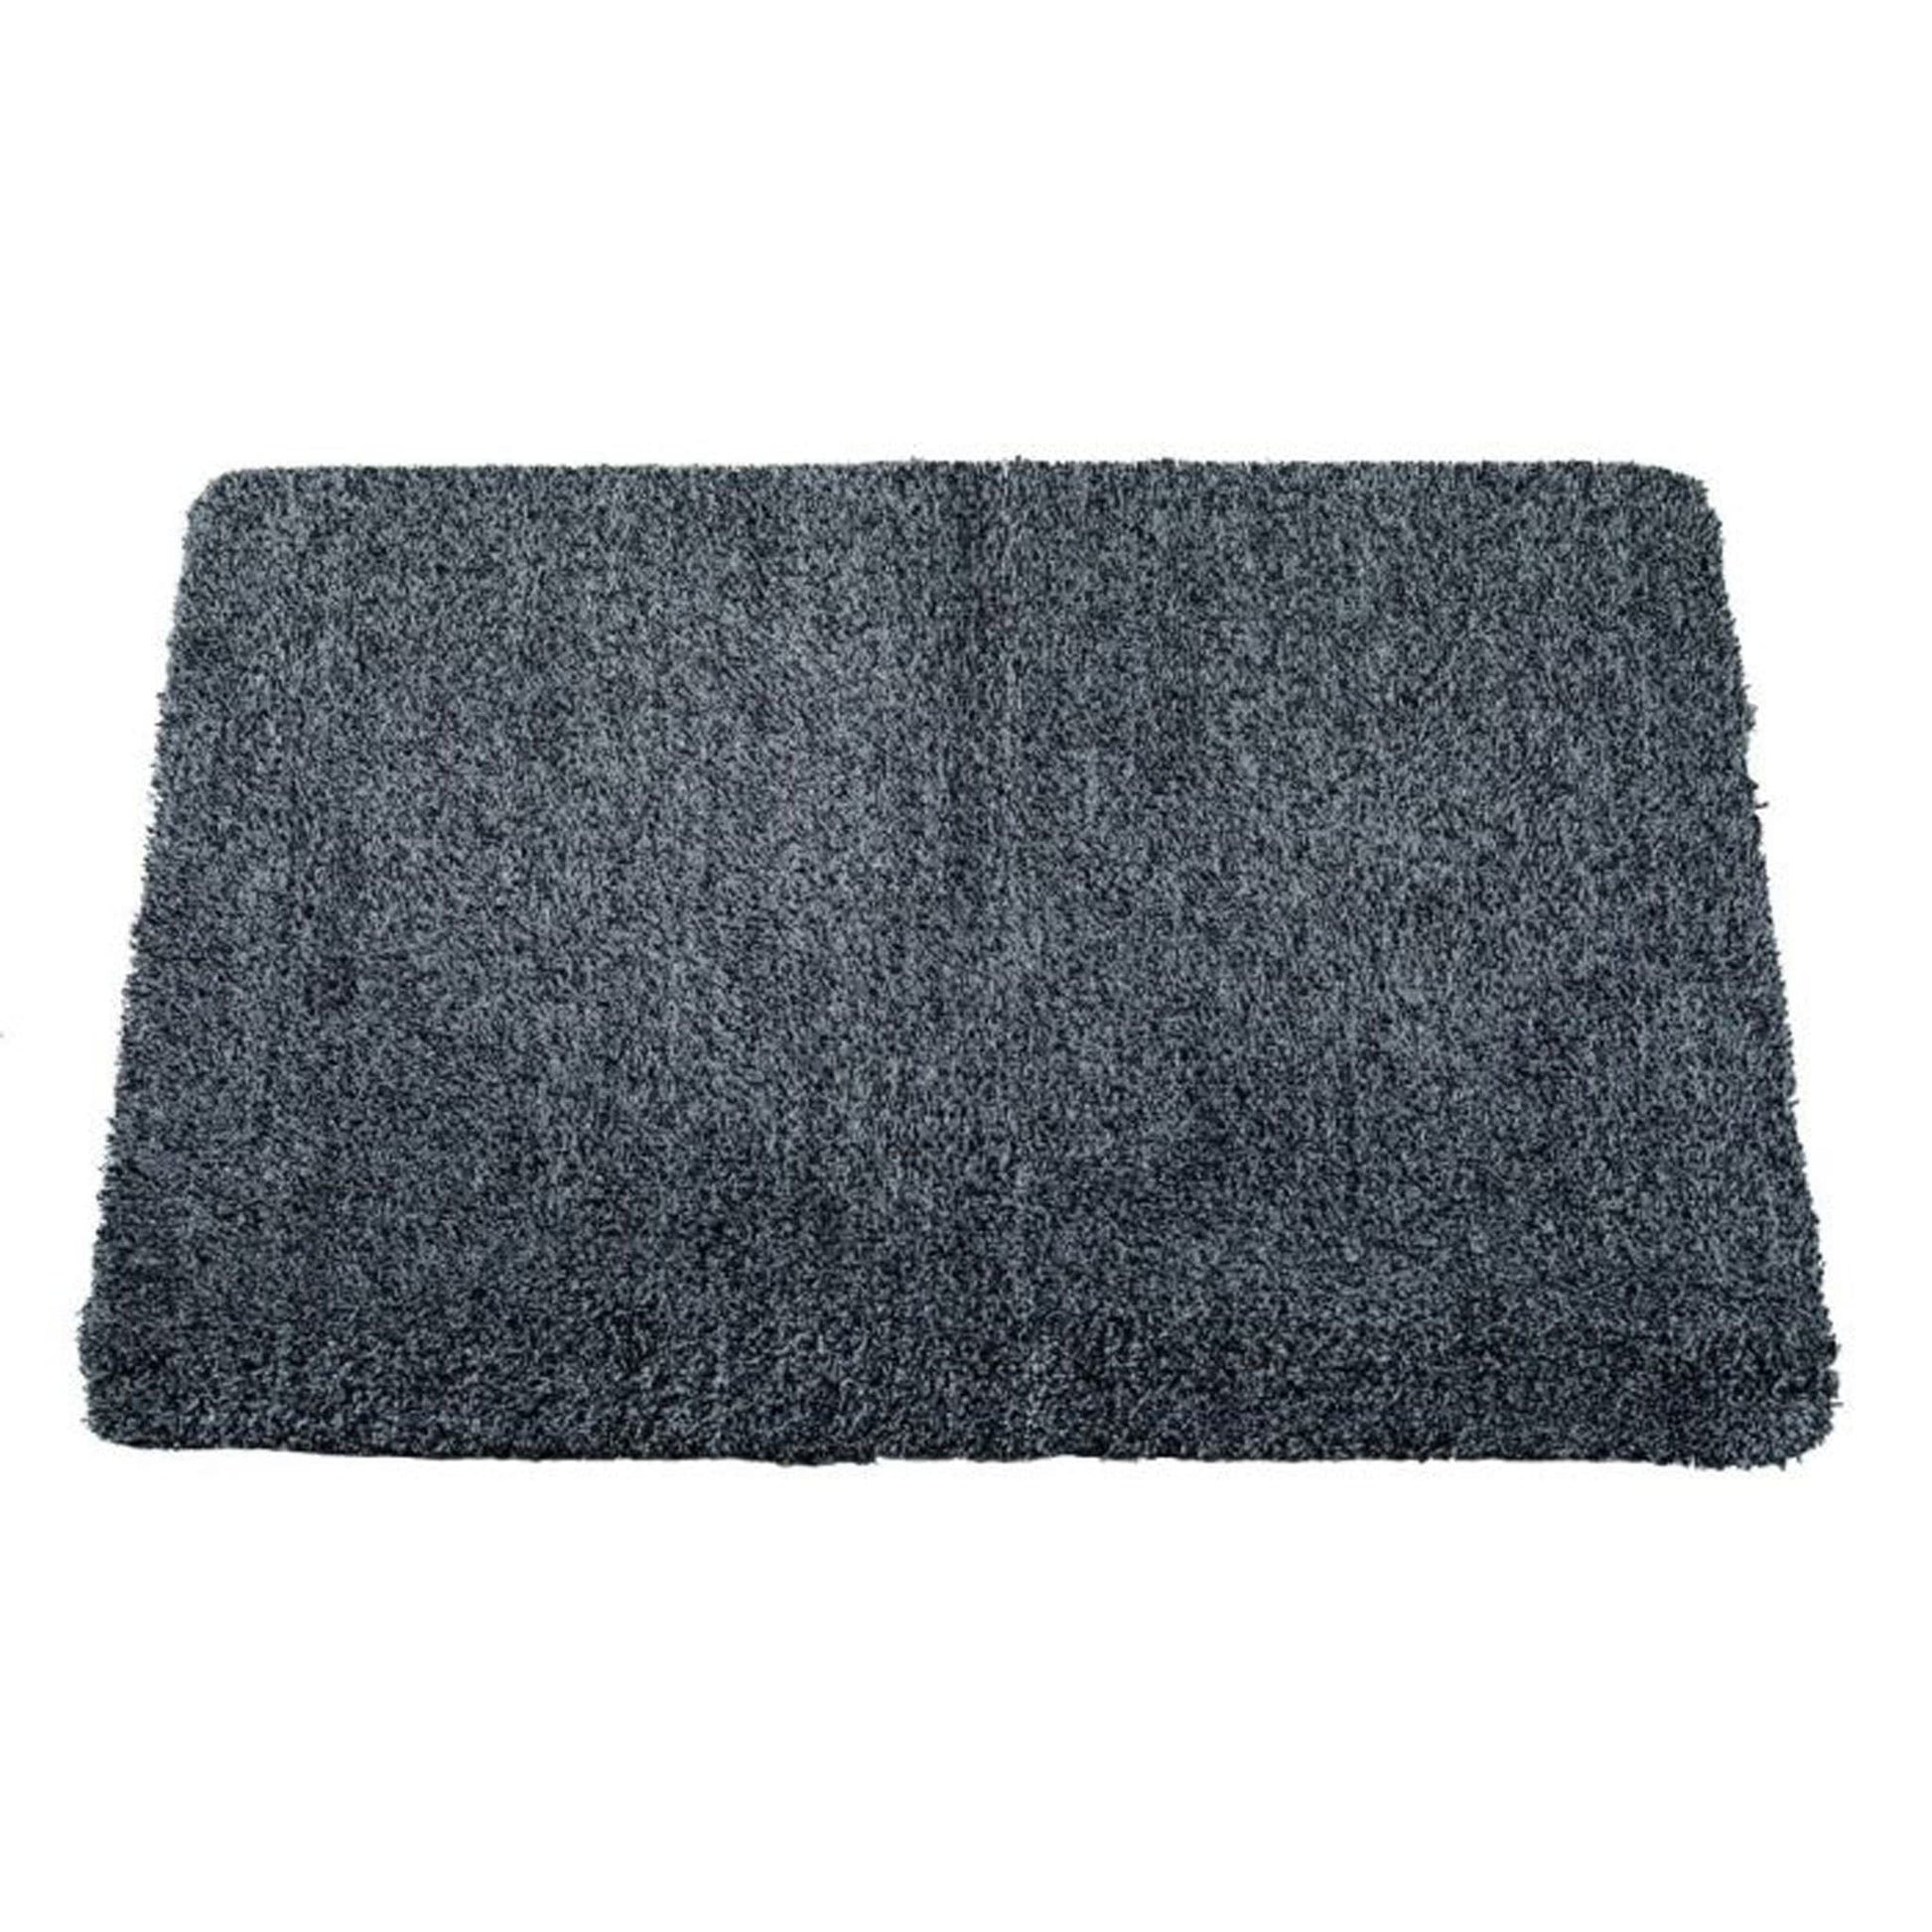 Rugs  -  Anthracite Doormat 60 x 80cm  -  50155435